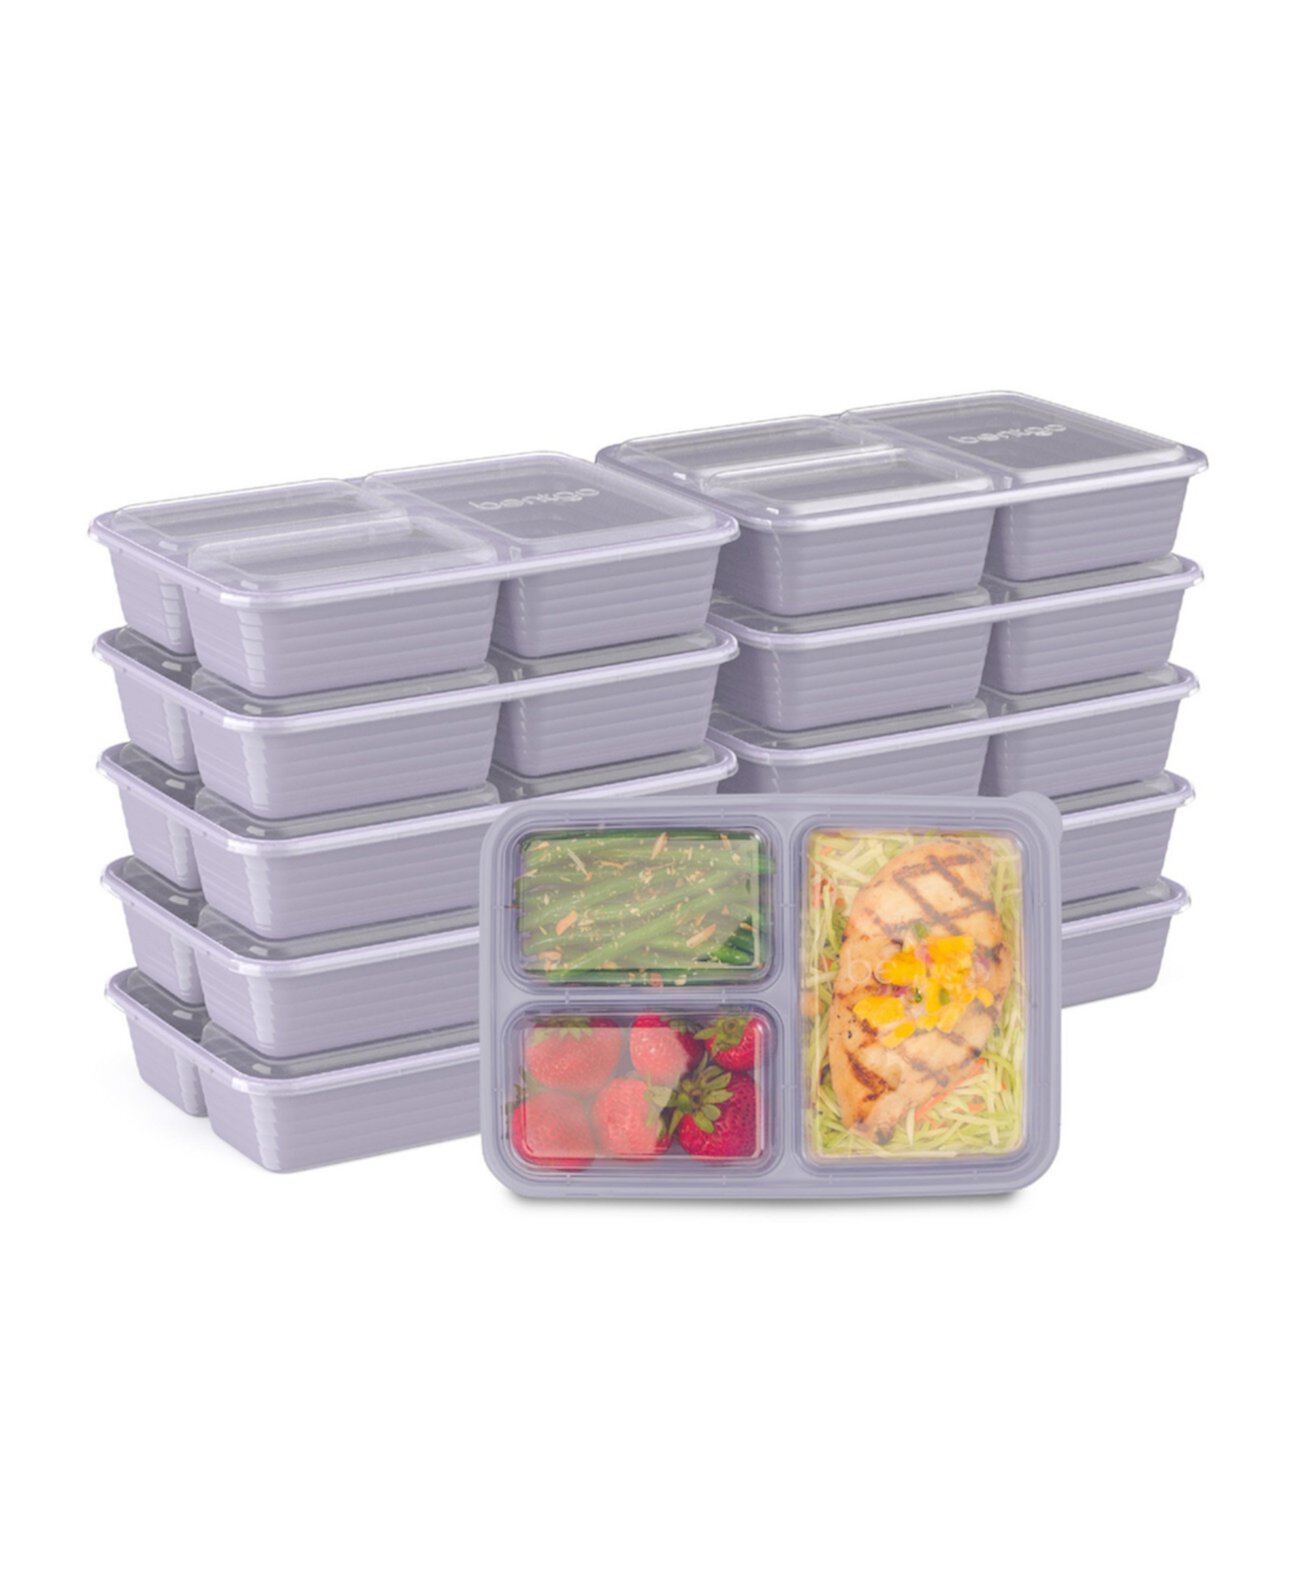 Контейнеры для хранения пищевых продуктов с 3 отделениями для приготовления еды, упаковка из 10 шт. Bentgo